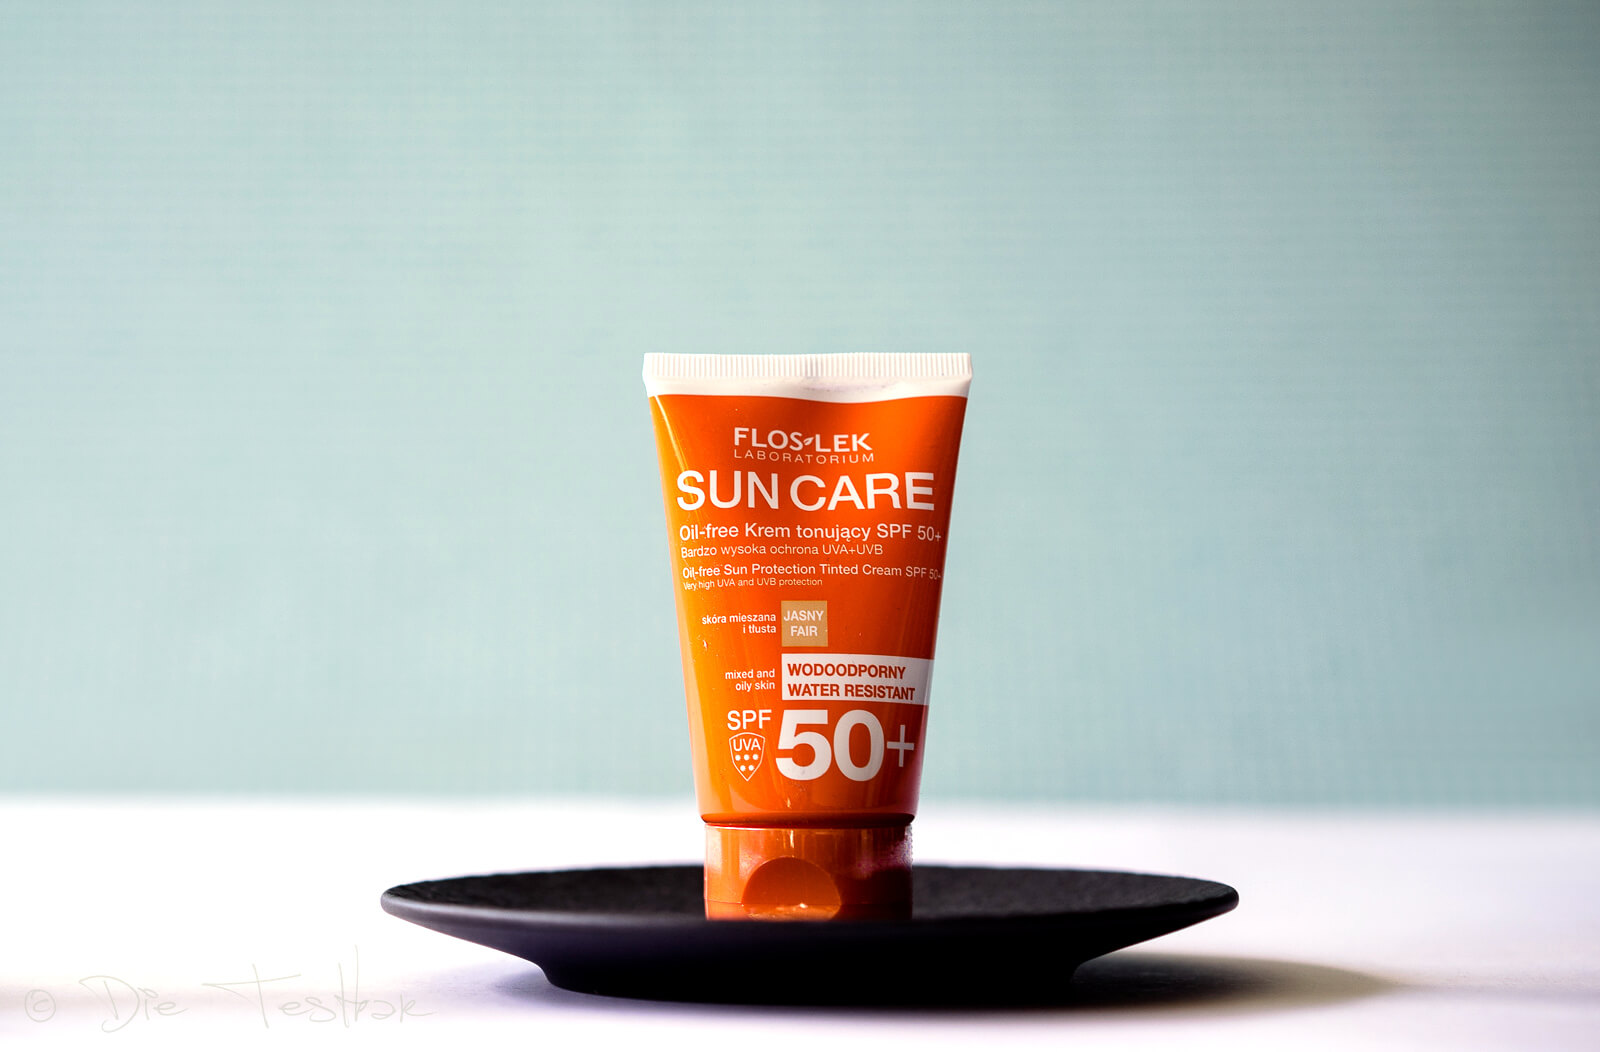 Floslek DERMO EXPERT™ - SUN CARE getönte, ölfreie UV-Schutzcreme LSF 50+